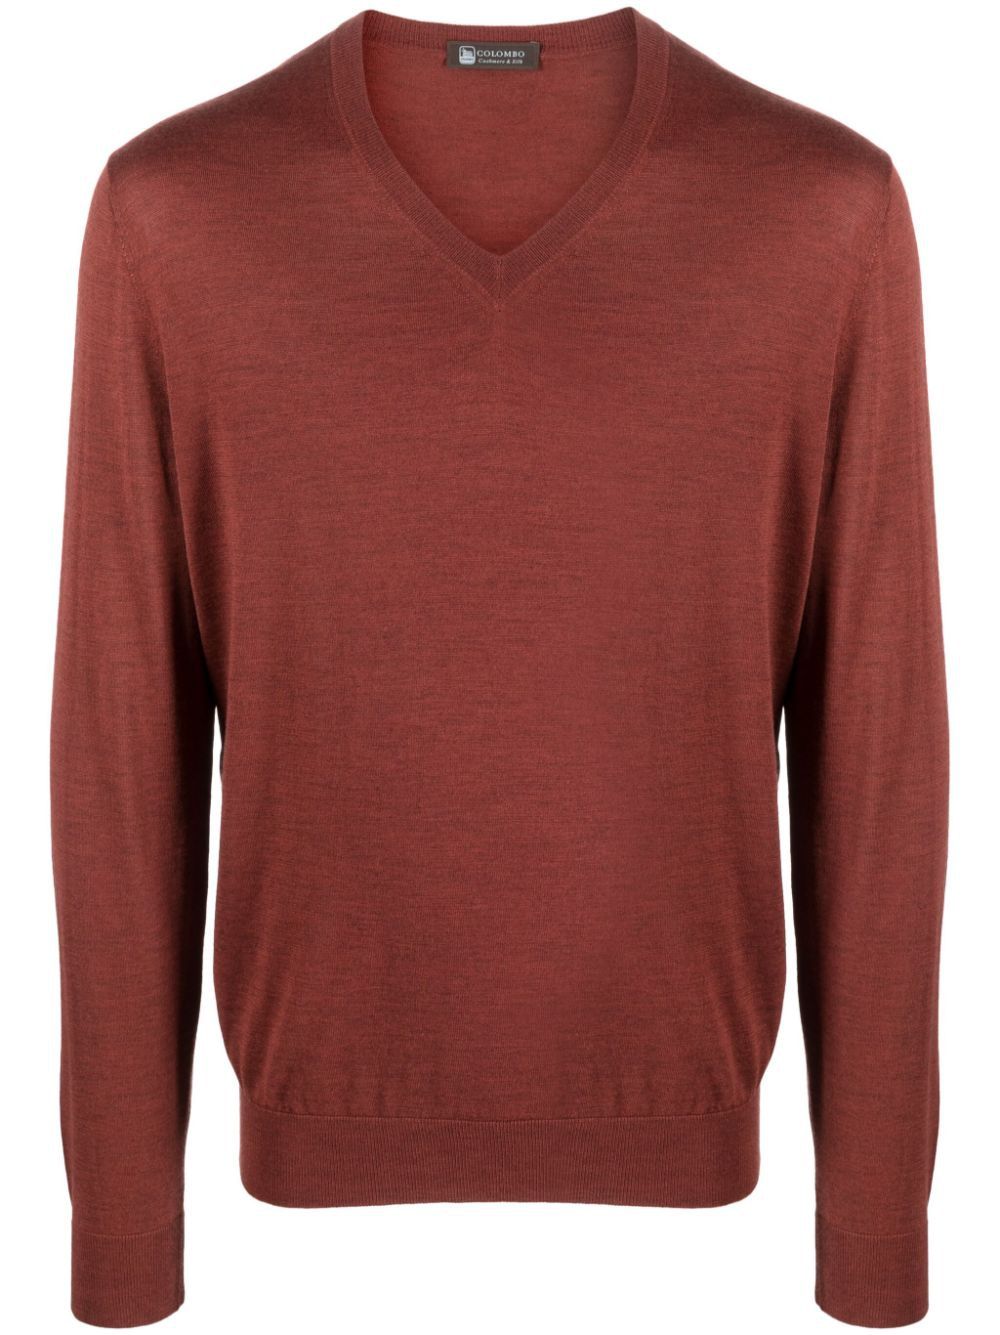 COLOMBO Luxurious V-Neck Sweater for Men - FW23